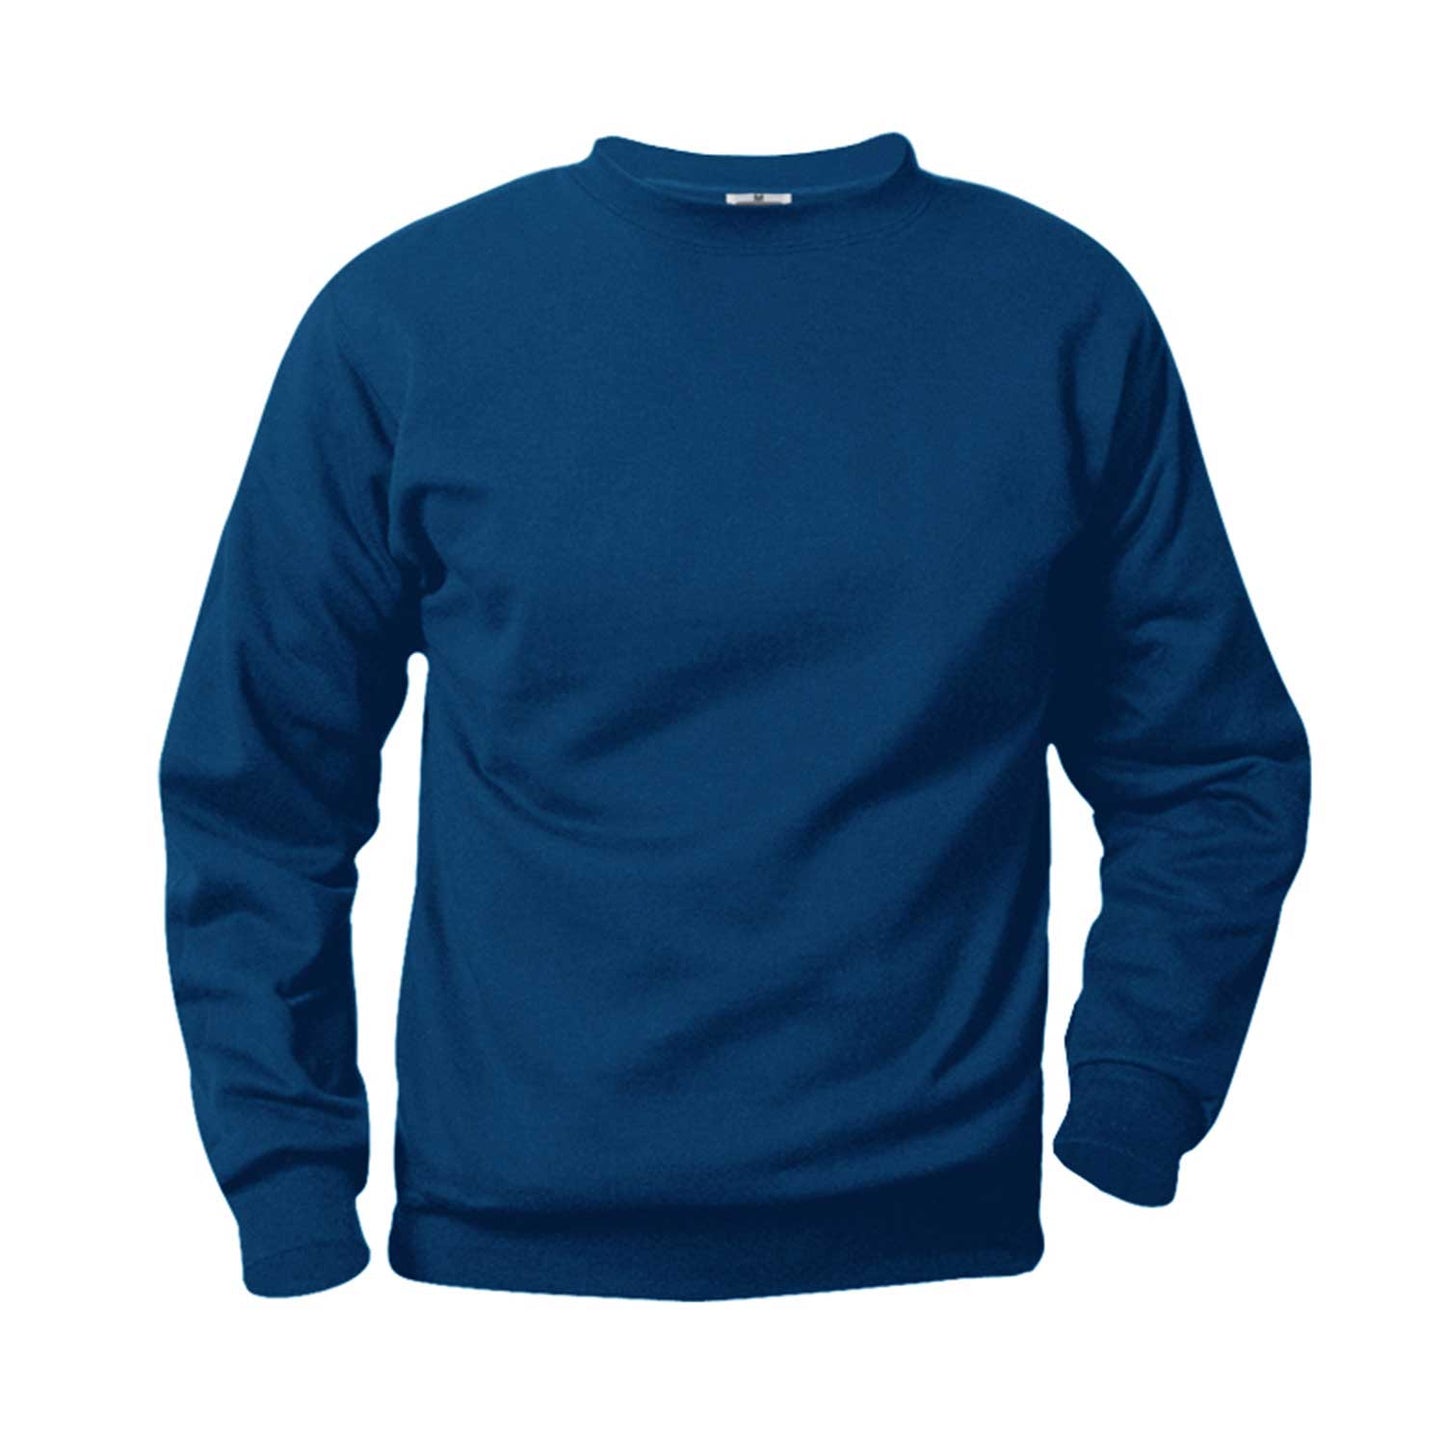 Unisex Crewneck Fleece Sweatshirt w/Logo - 1109